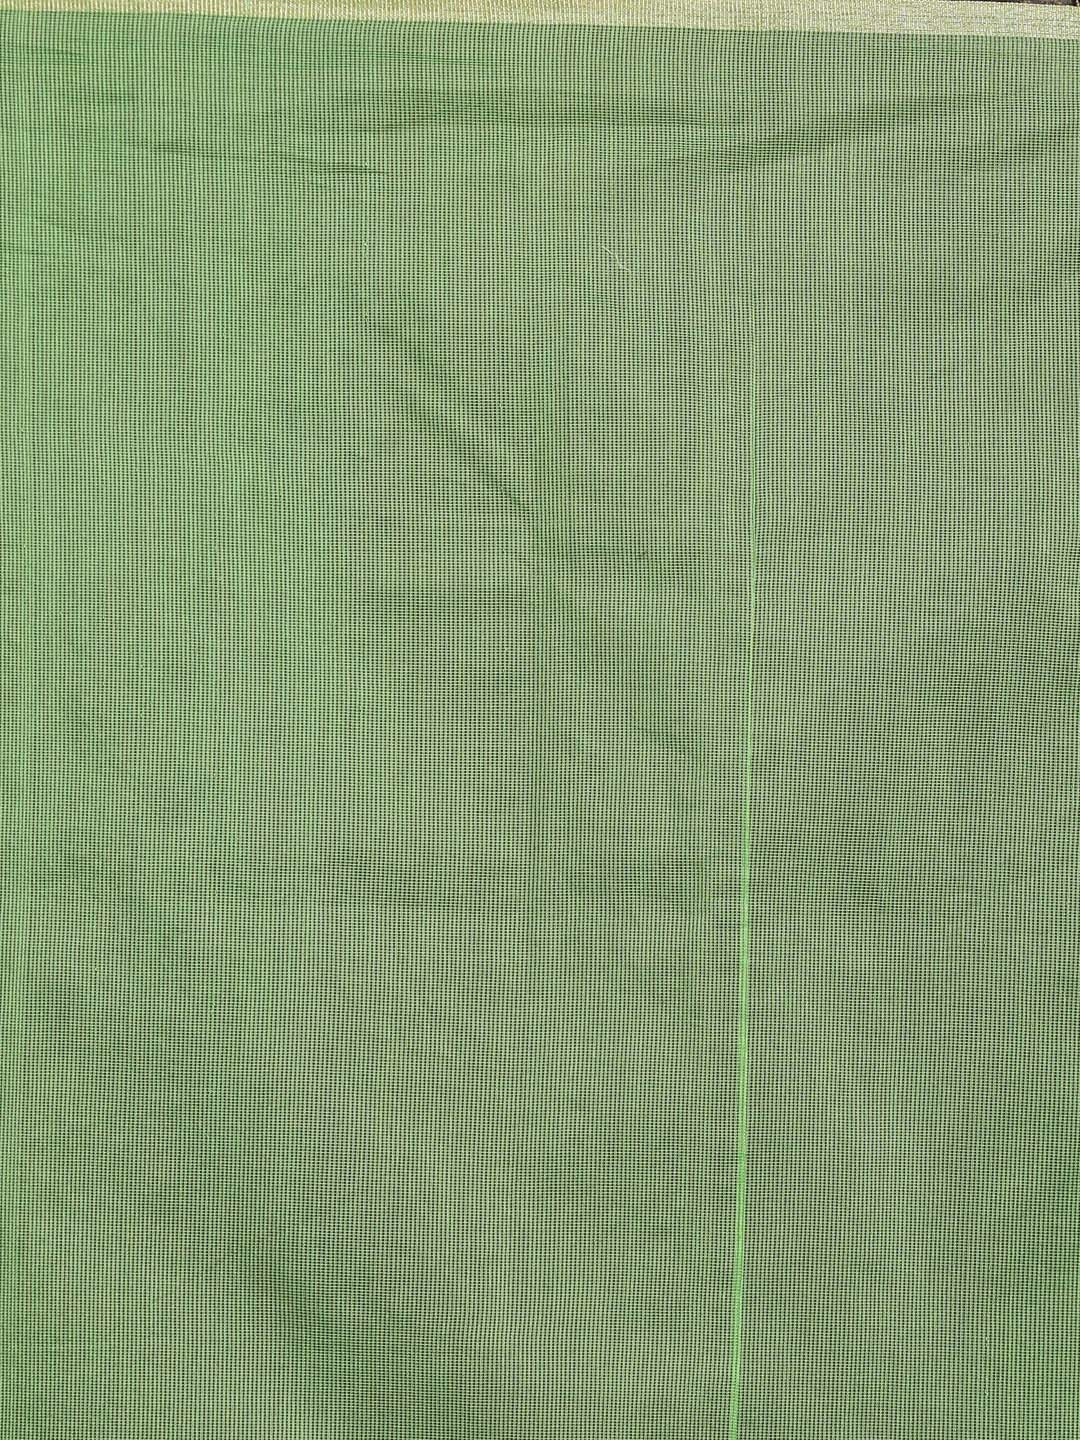 Indethnic Banarasi Green Solid Daily Wear Saree - Saree Detail View